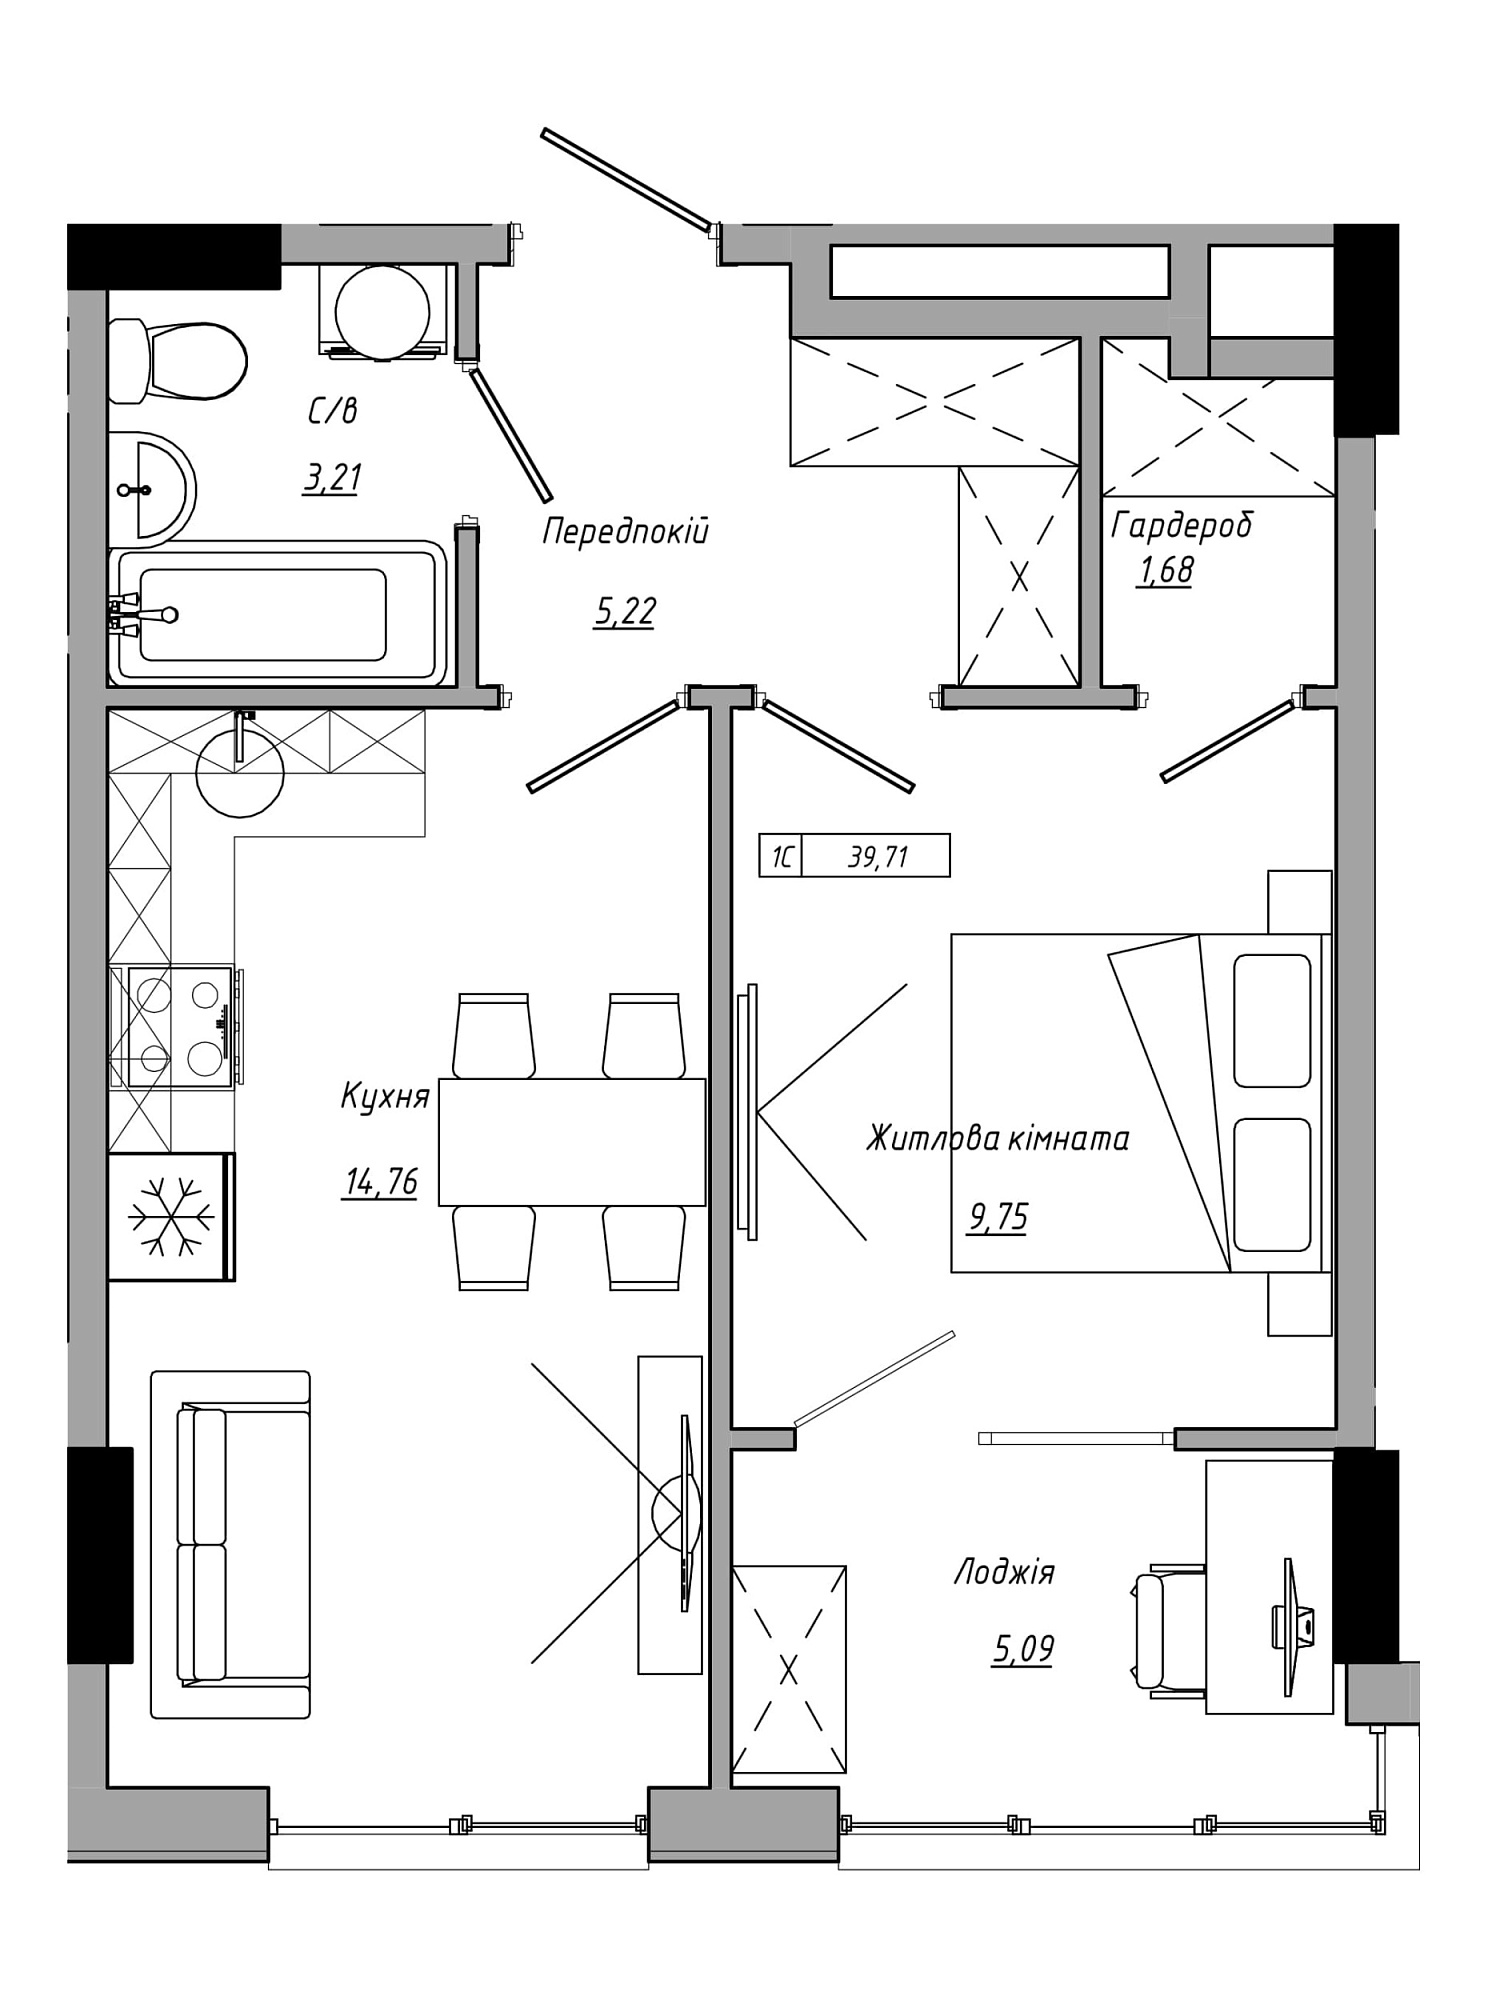 Планування 1-к квартира площею 39.71м2, AB-21-06/00021.